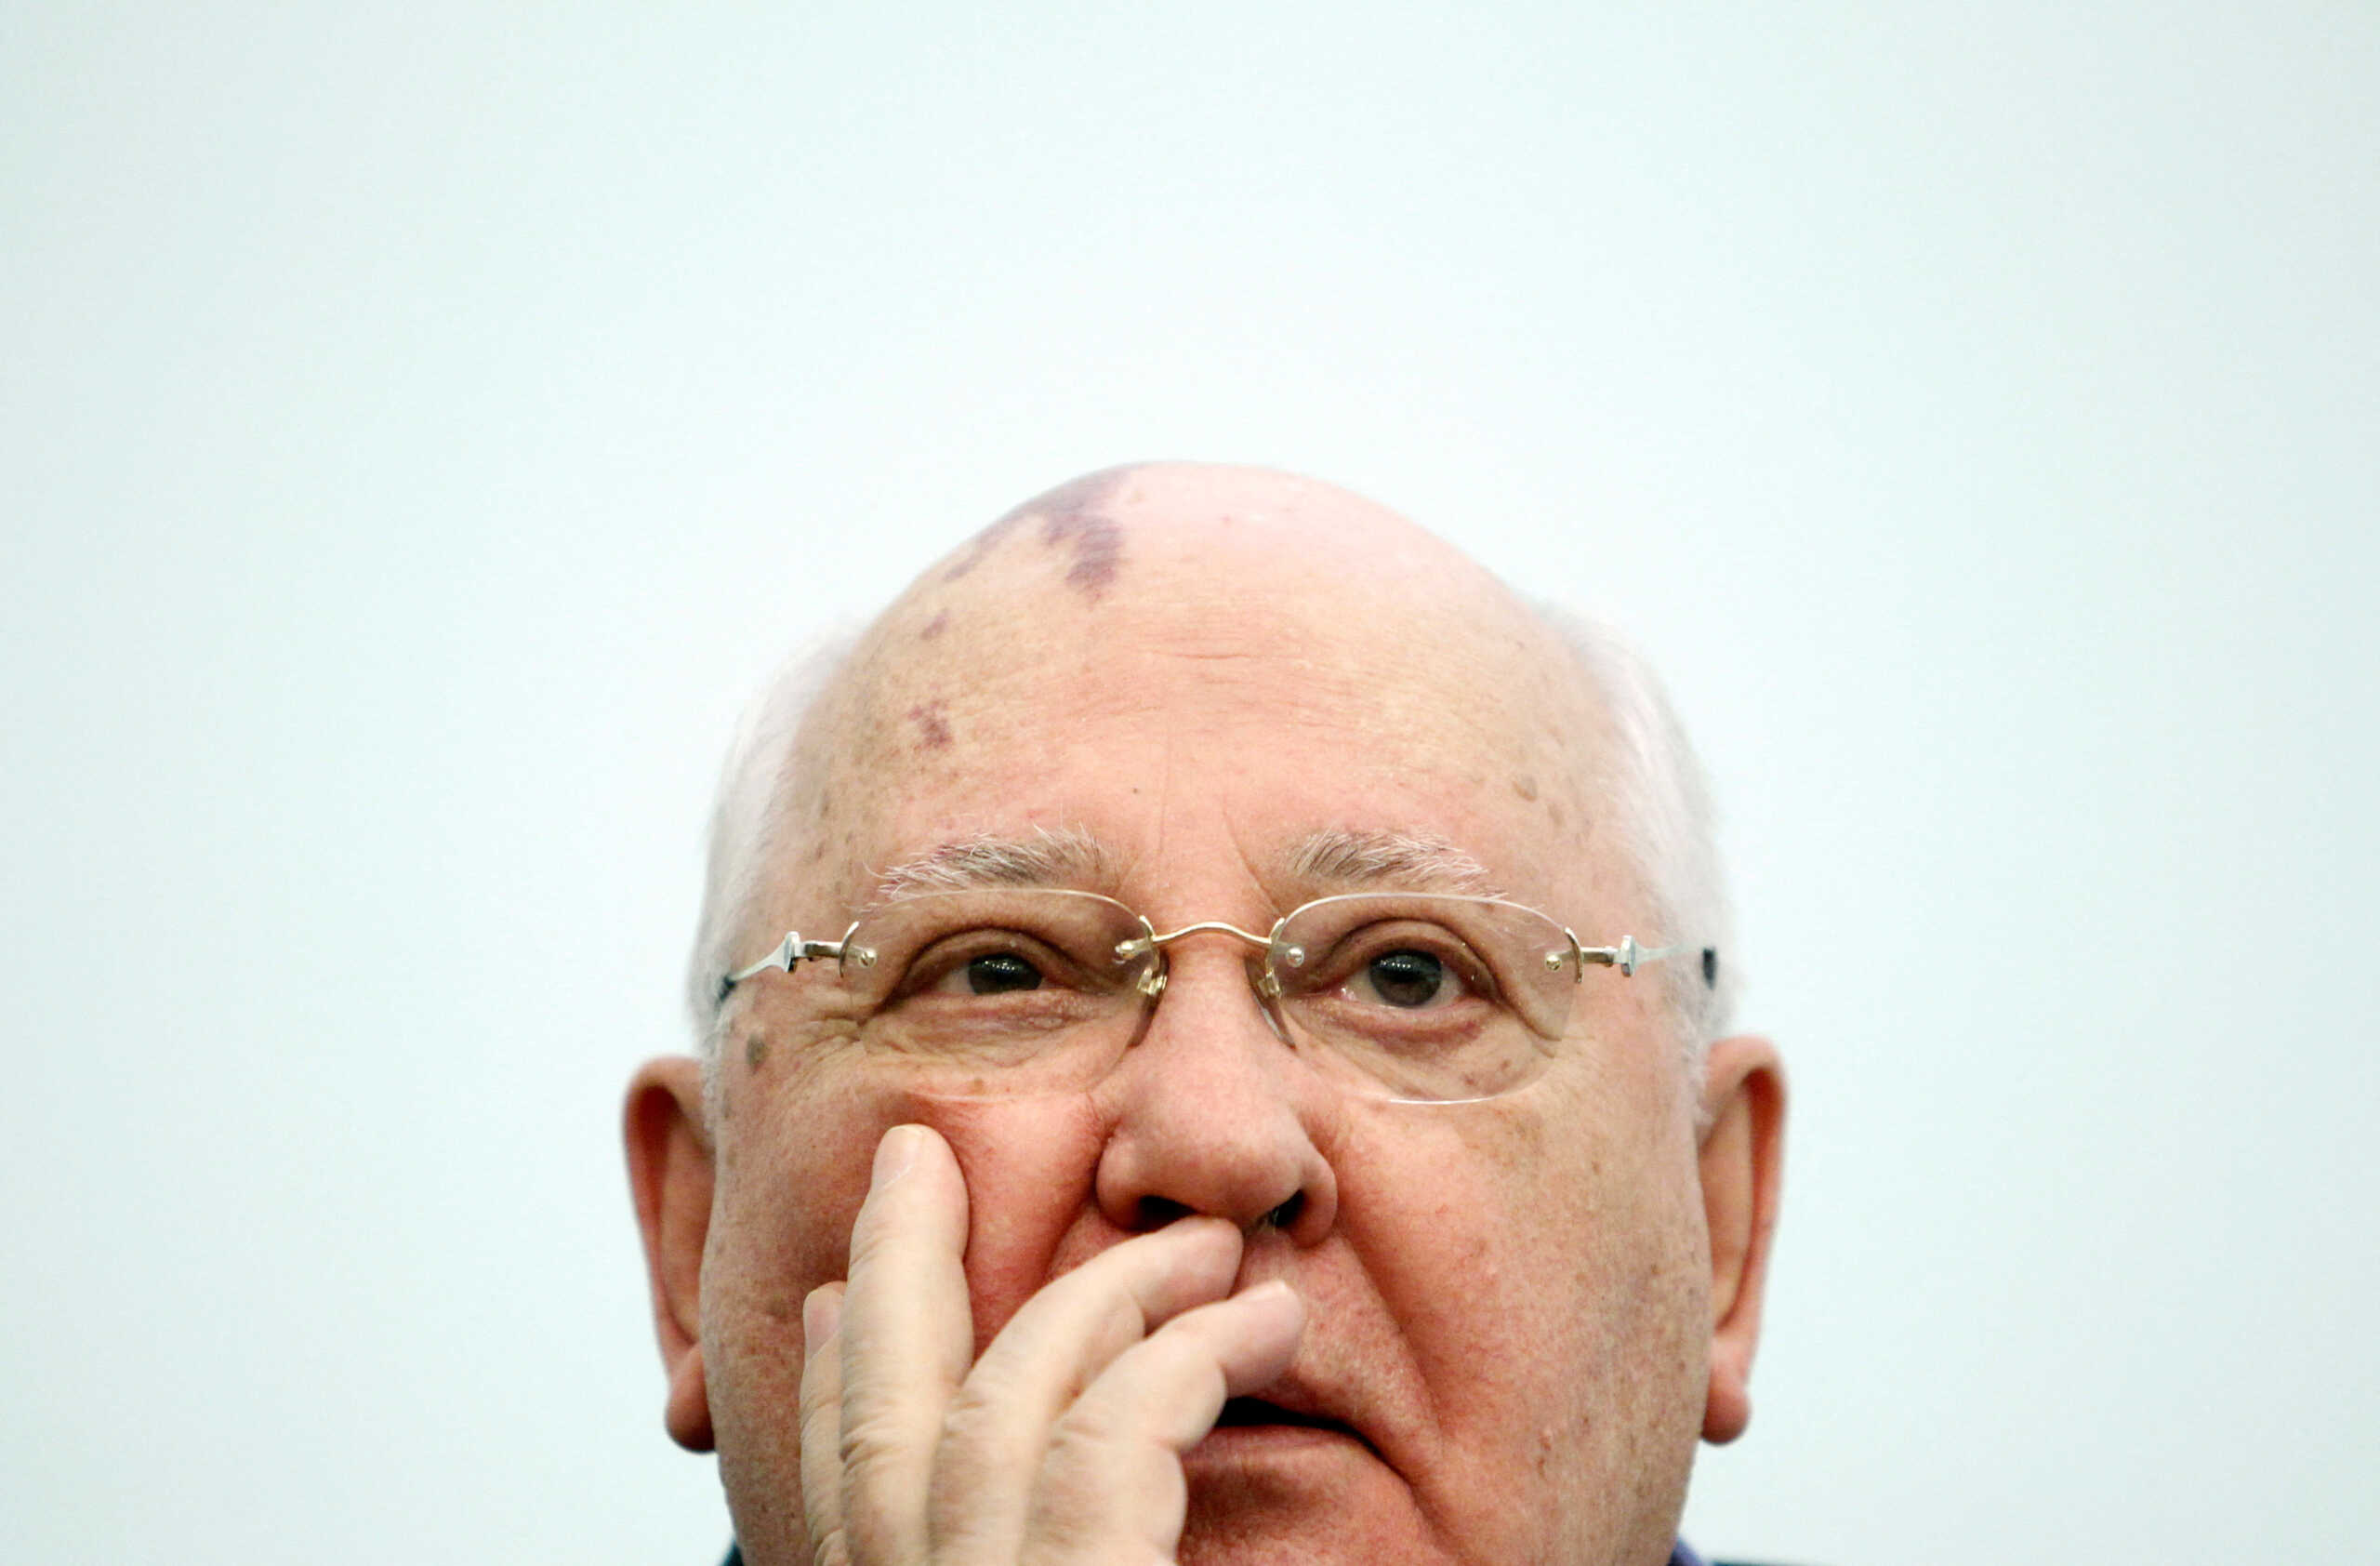 Μιχαήλ Γκορμπατσόφ: «Ένας μόνο πολιτικός μπορεί να αλλάξει τον κόσμο προς το καλύτερο» – Το εγκώμιο της Άνγκελα Μέρκελ